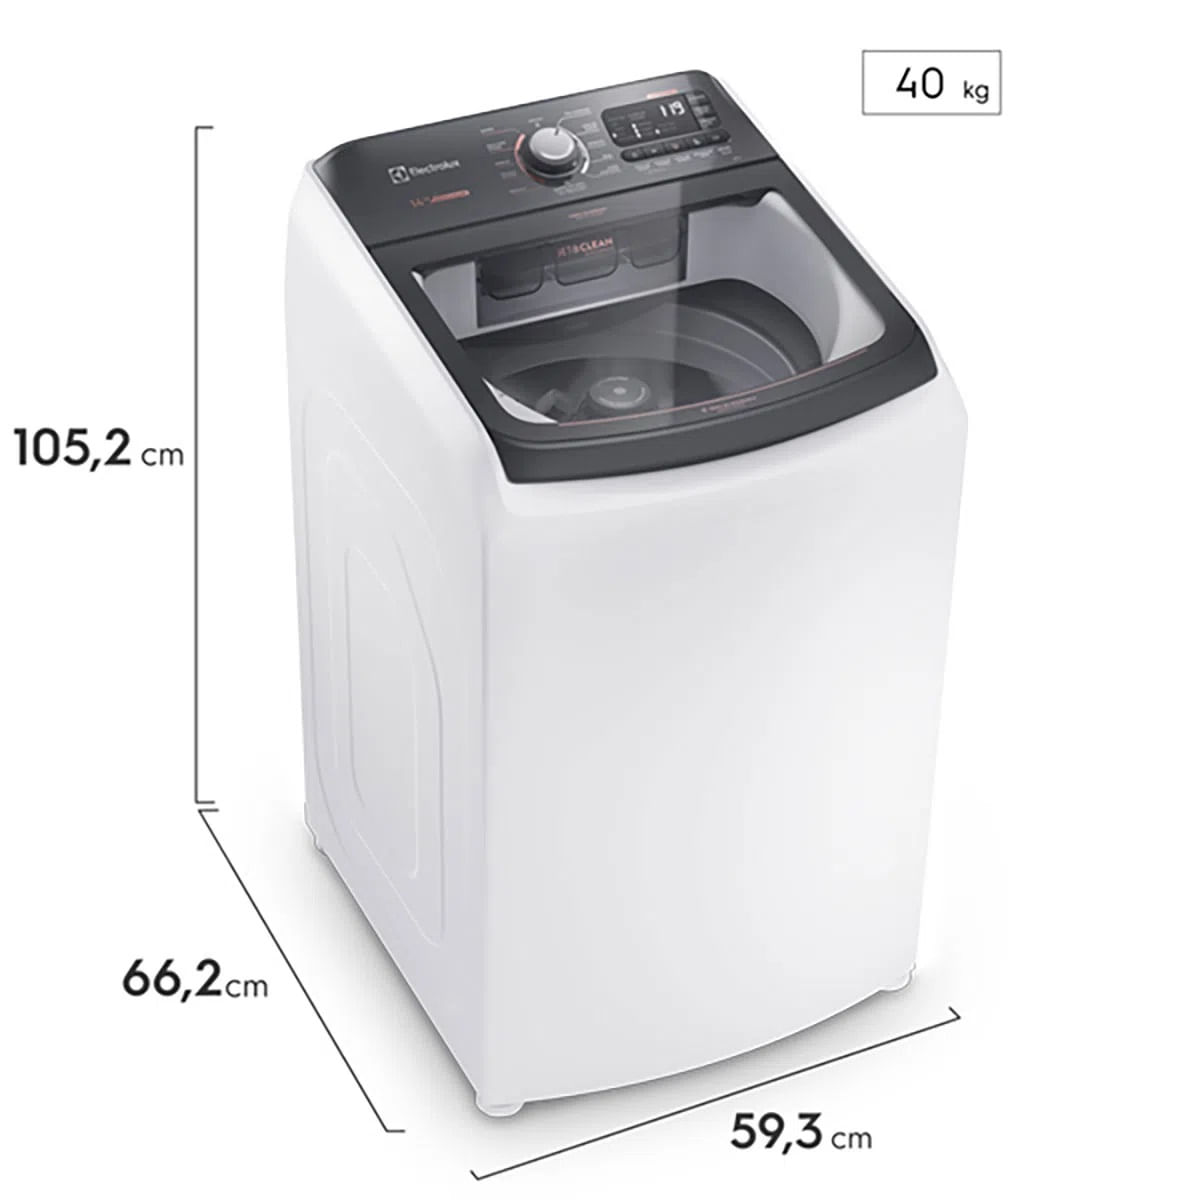 maquina-de-lavar-14kg-electrolux-premium-care-com-cesto-inox-jet-clean-e-time-control-lec14-220v-7.jpg